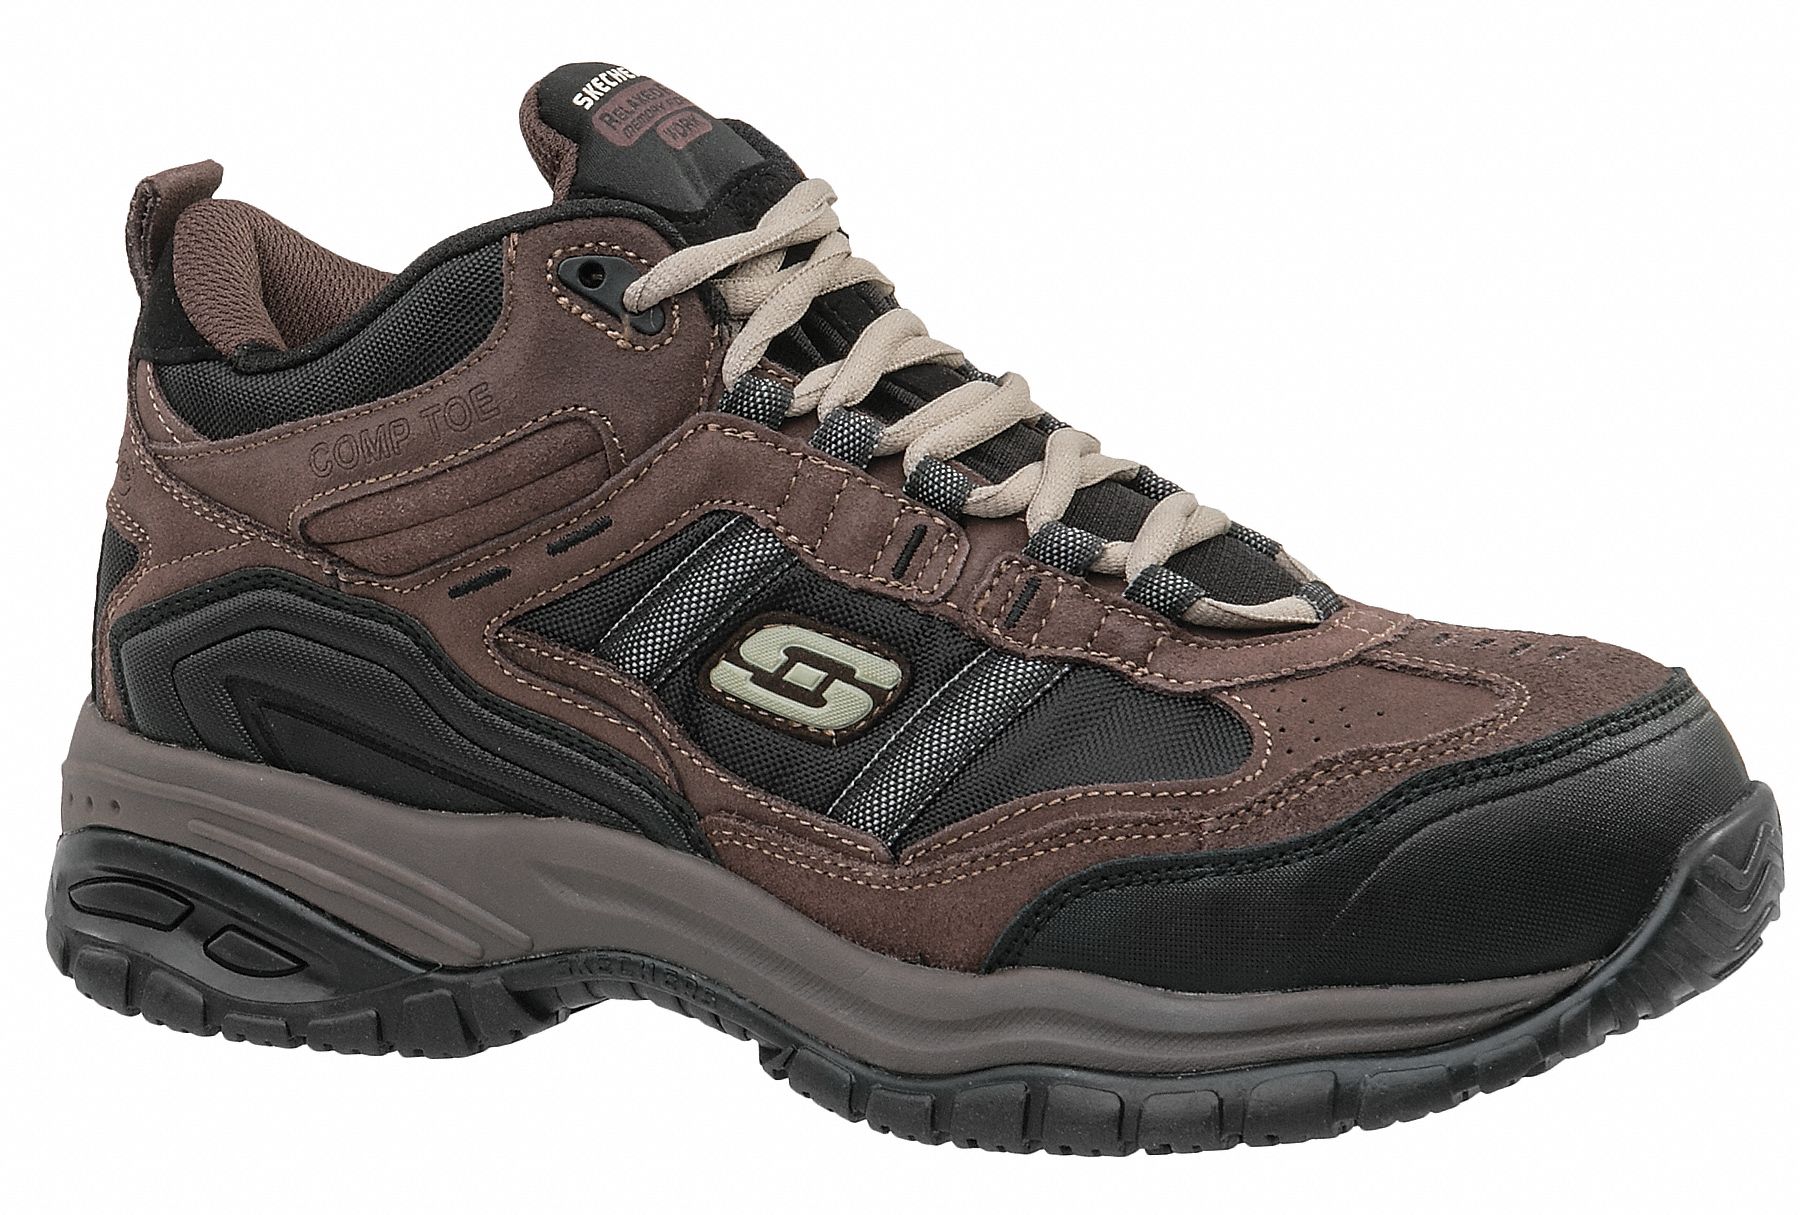 SKECHERS Athletic Shoe, 9-1/2, D, Men's, Brown/Black, Composite Toe ...